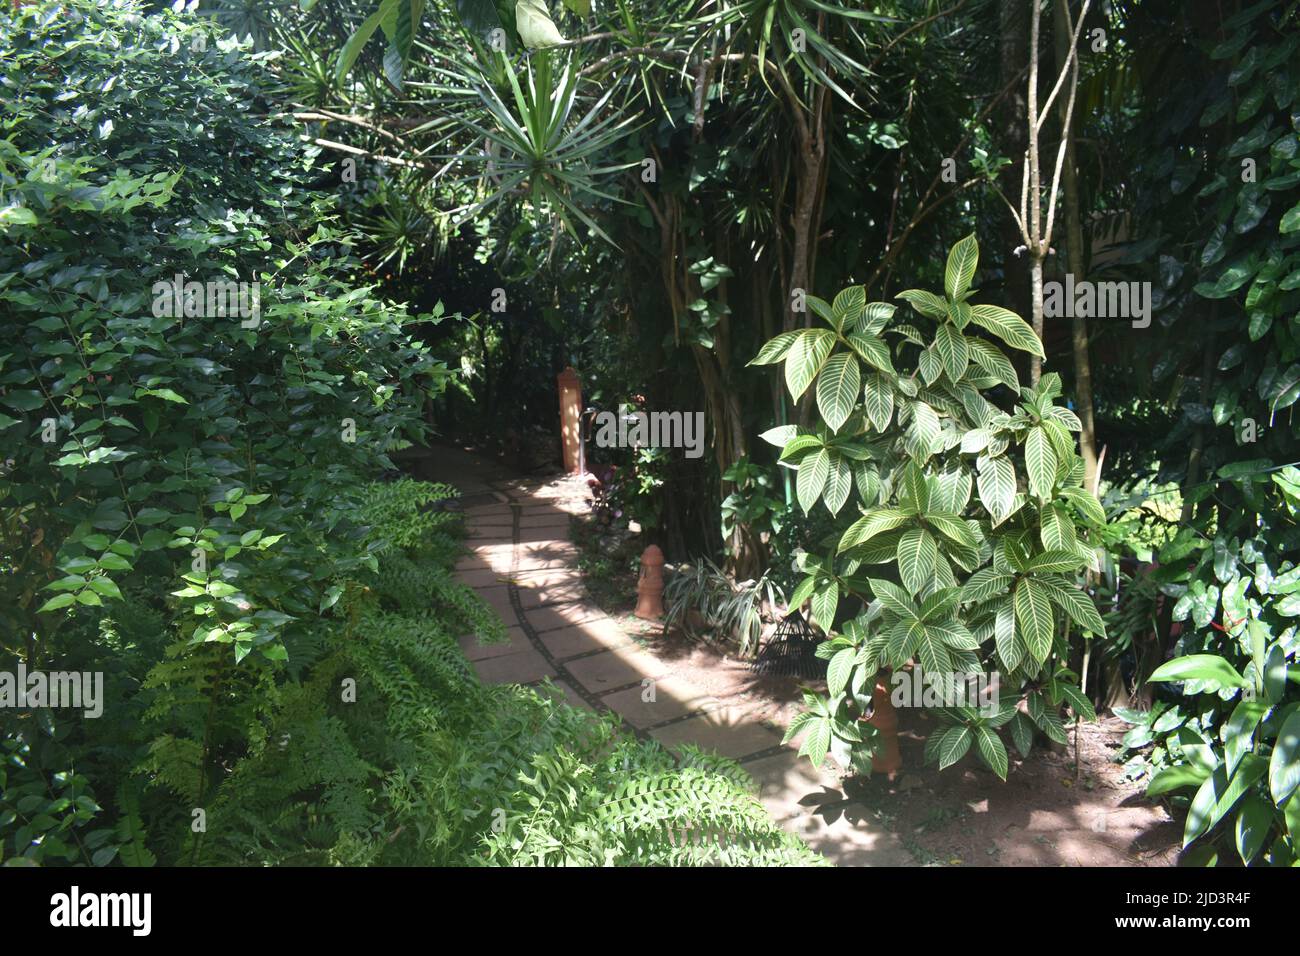 Un jardin paysagé avec des plantes, des fleurs, des arbres fruitiers, des étangs, des fontaines, Statues bouddhistes, bancs de jardin et bien d'autres pour un moment de détente dans un spa Ayurveda. Colombo. Sri Lanka. Banque D'Images